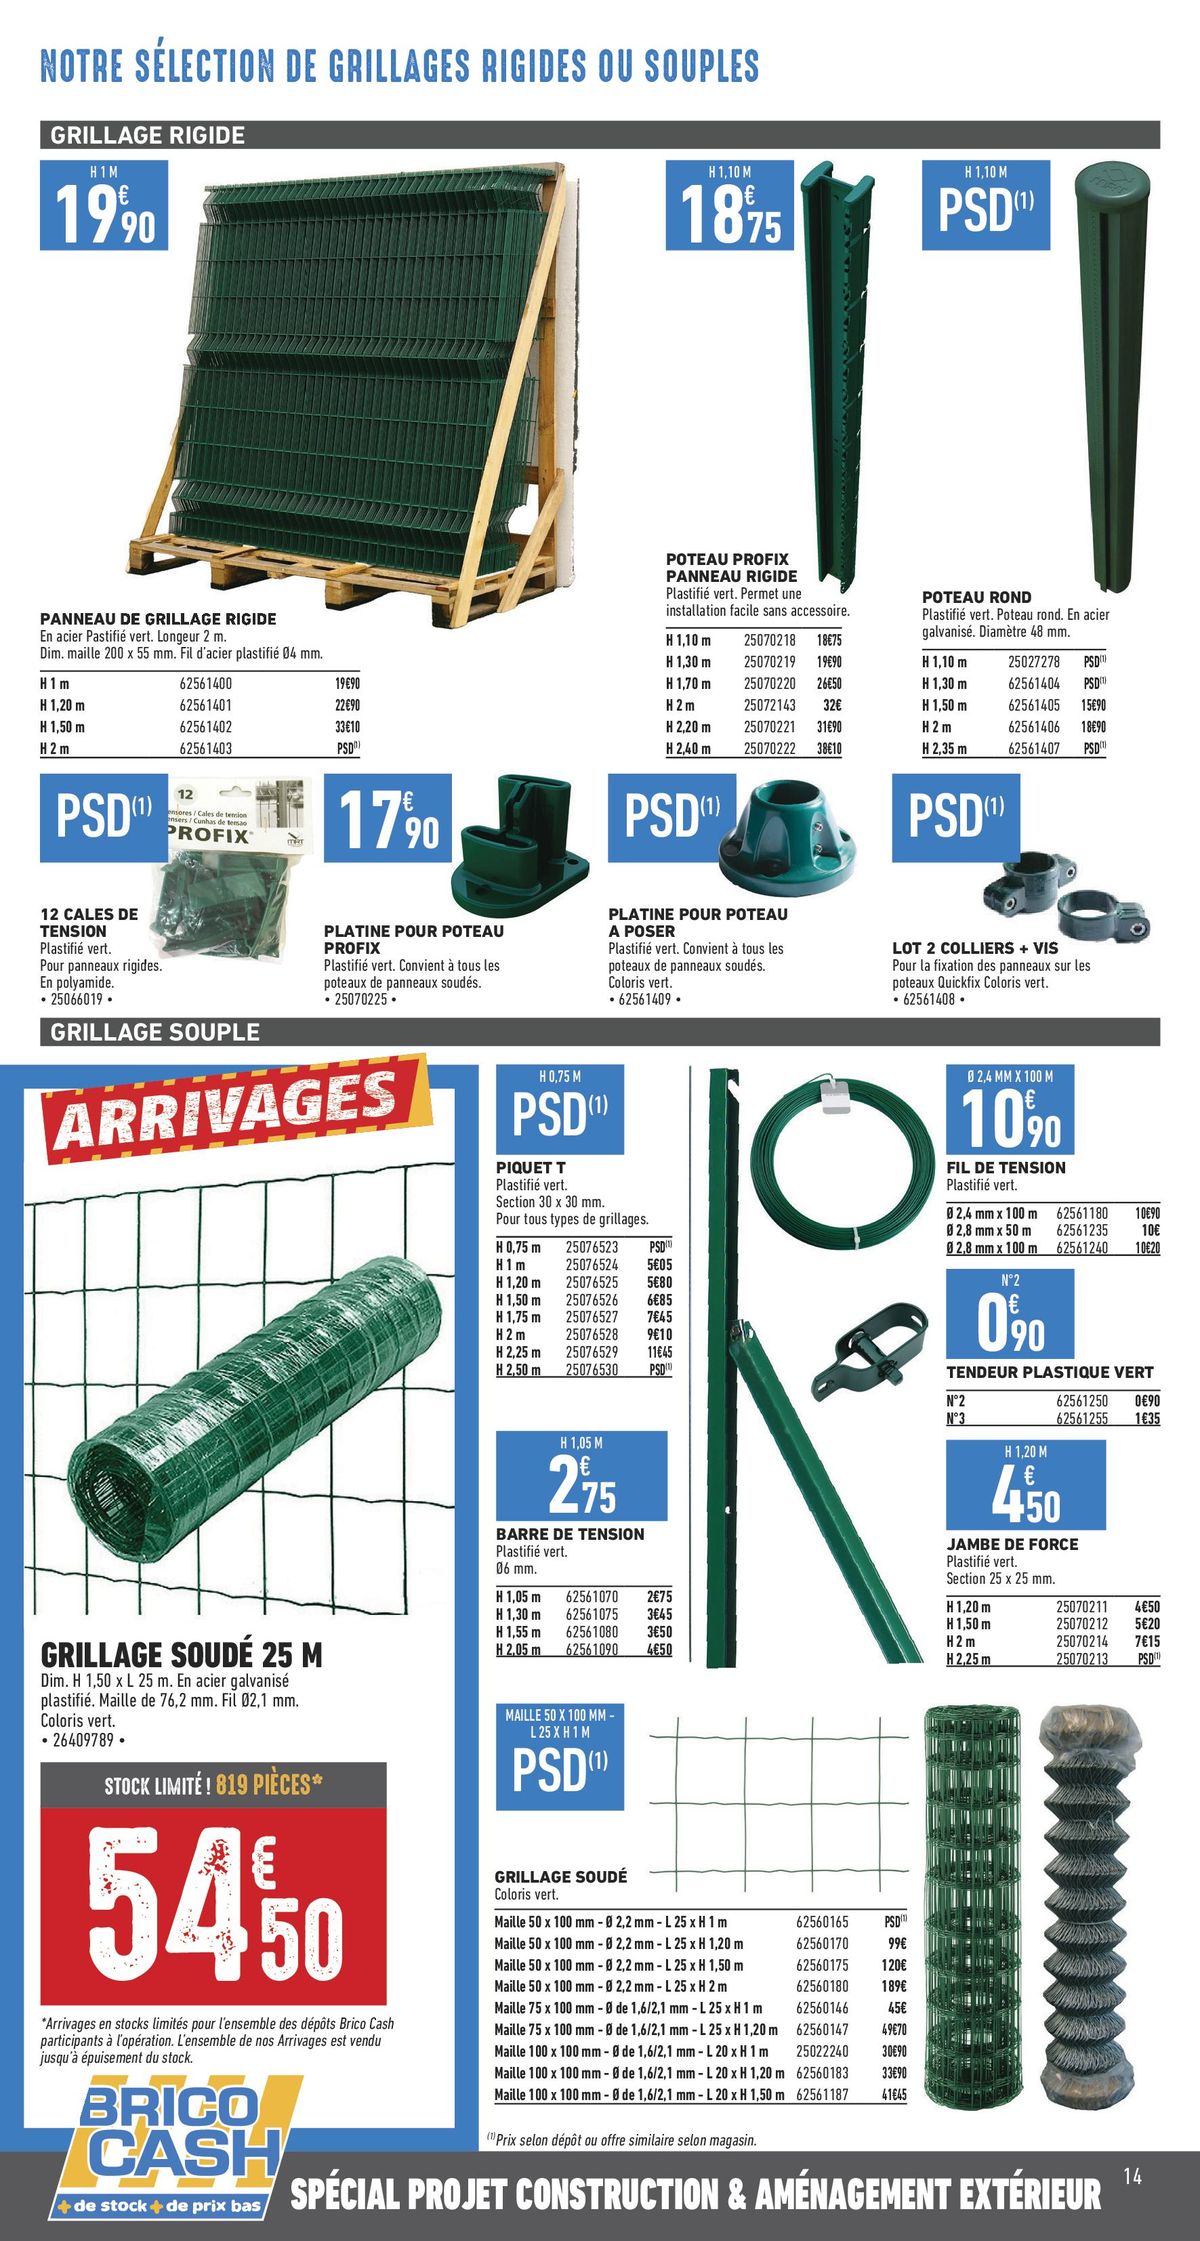 Catalogue Catalogue Construction & aménagement extérieur, page 00006